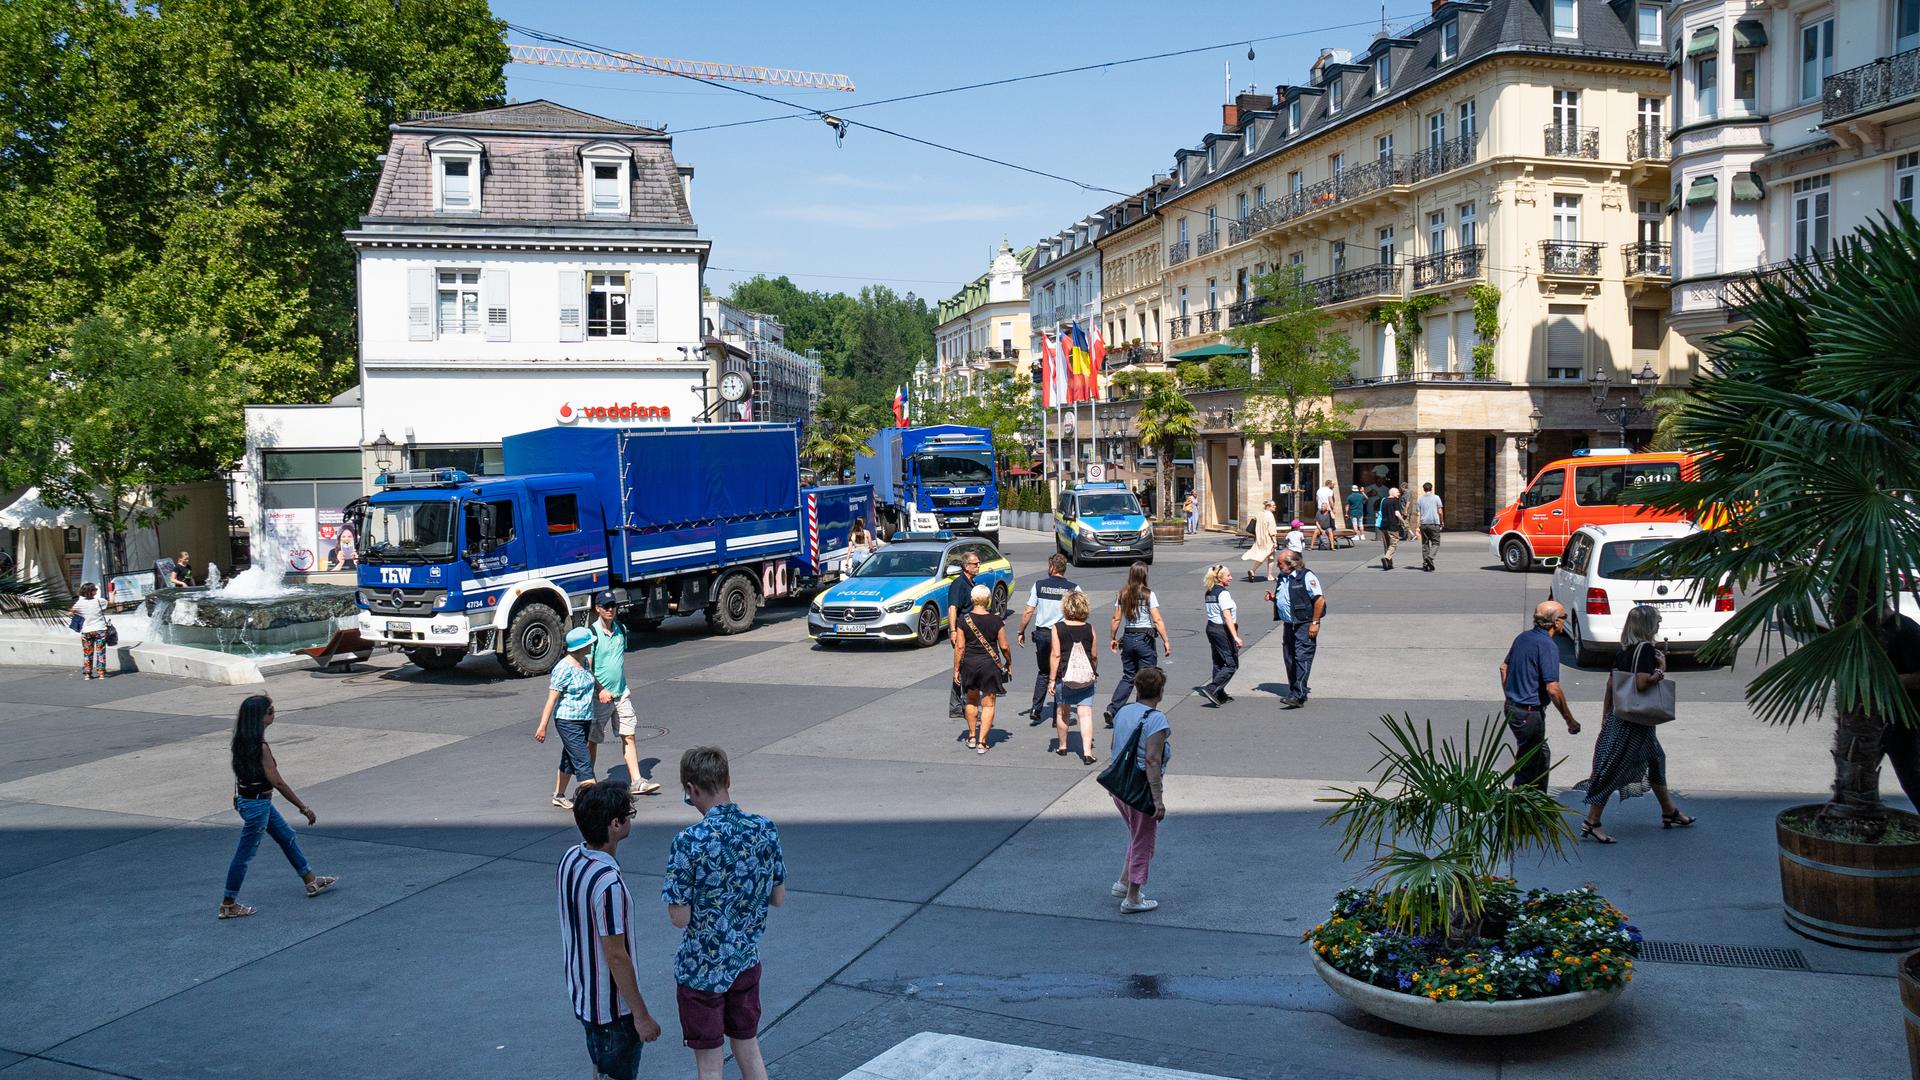 Wegen des Stromausfalls in Baden-Baden sind viele Einsatzkräfte in der Innenstadt.